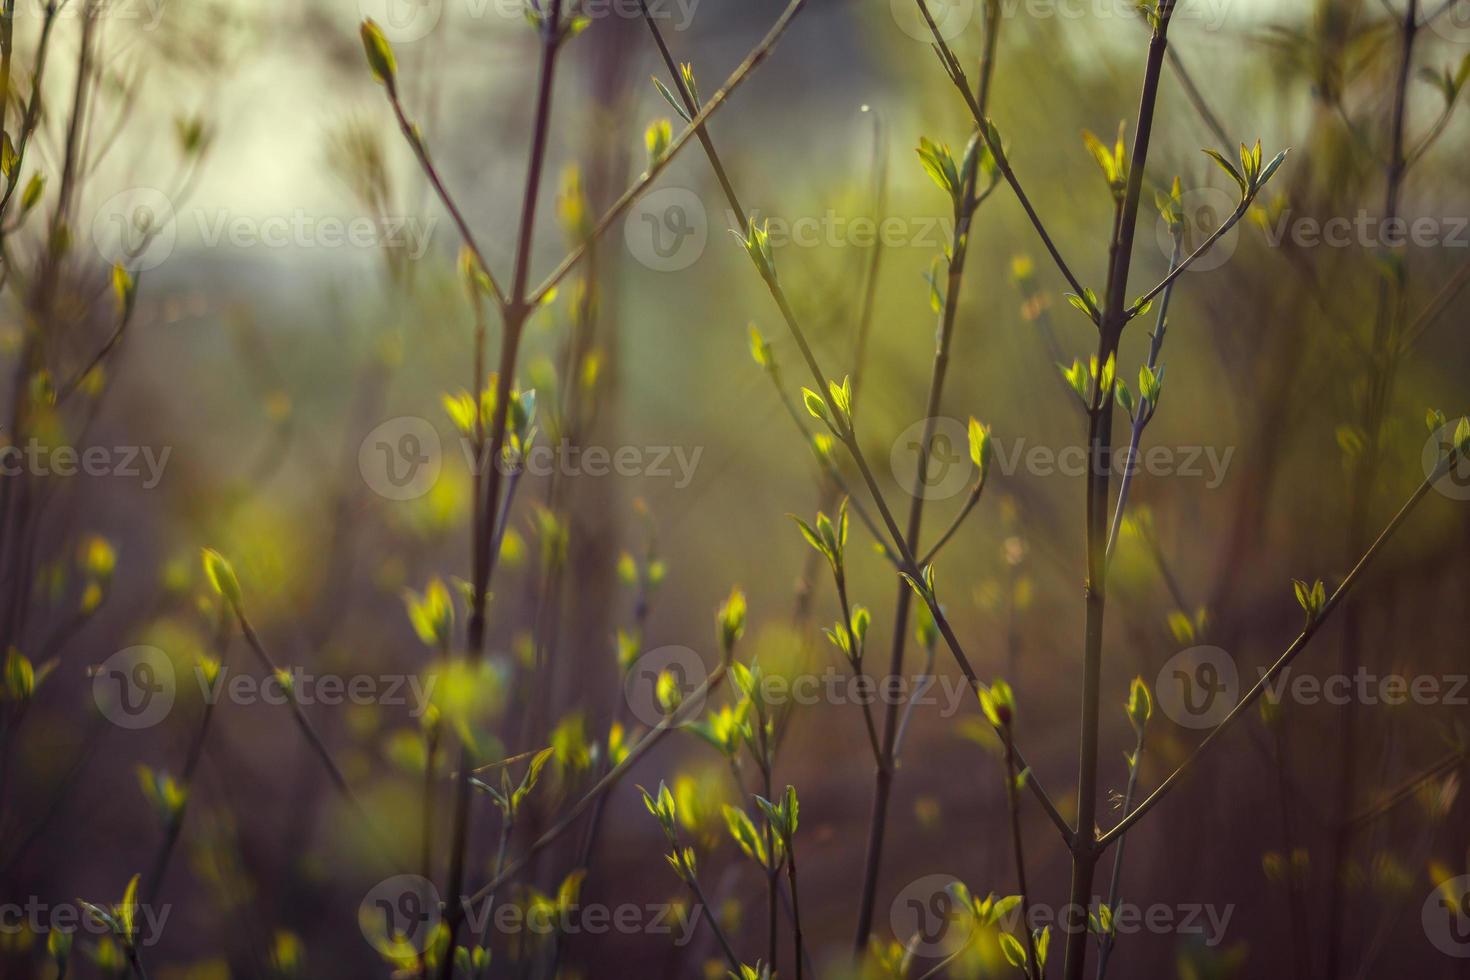 träd blommar på våren. grenar av ett träd med små gröna blad. bakgrund ljusgrön. frontvy foto